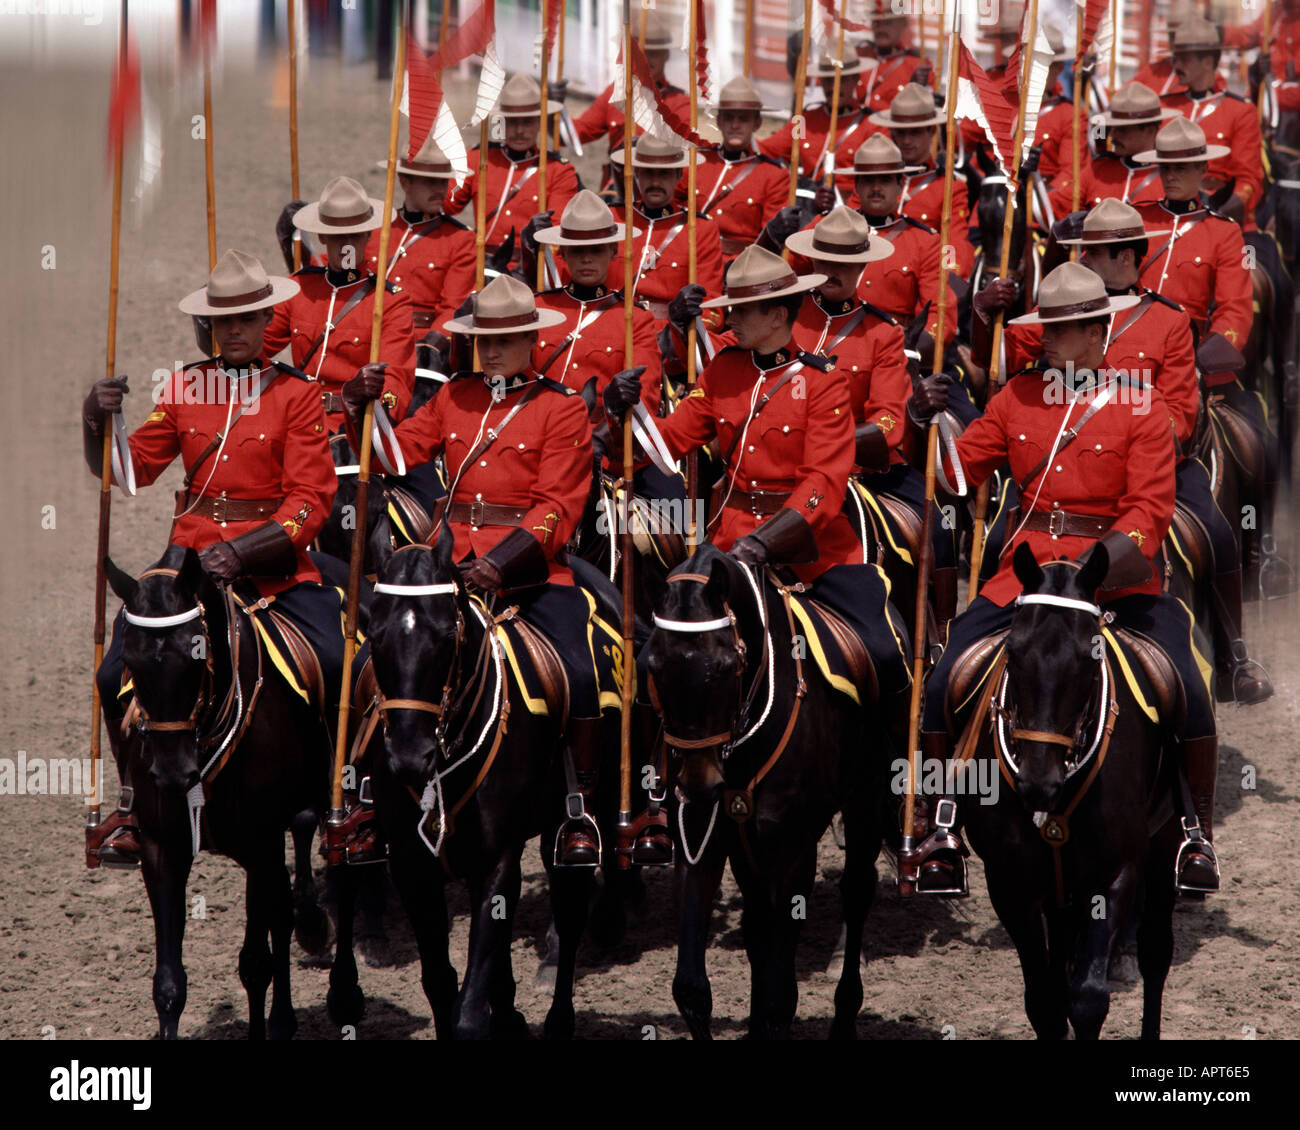 CA - ALBERTA : Gendarmerie royale du Canada dans le cadre du Stampede de Calgary Banque D'Images